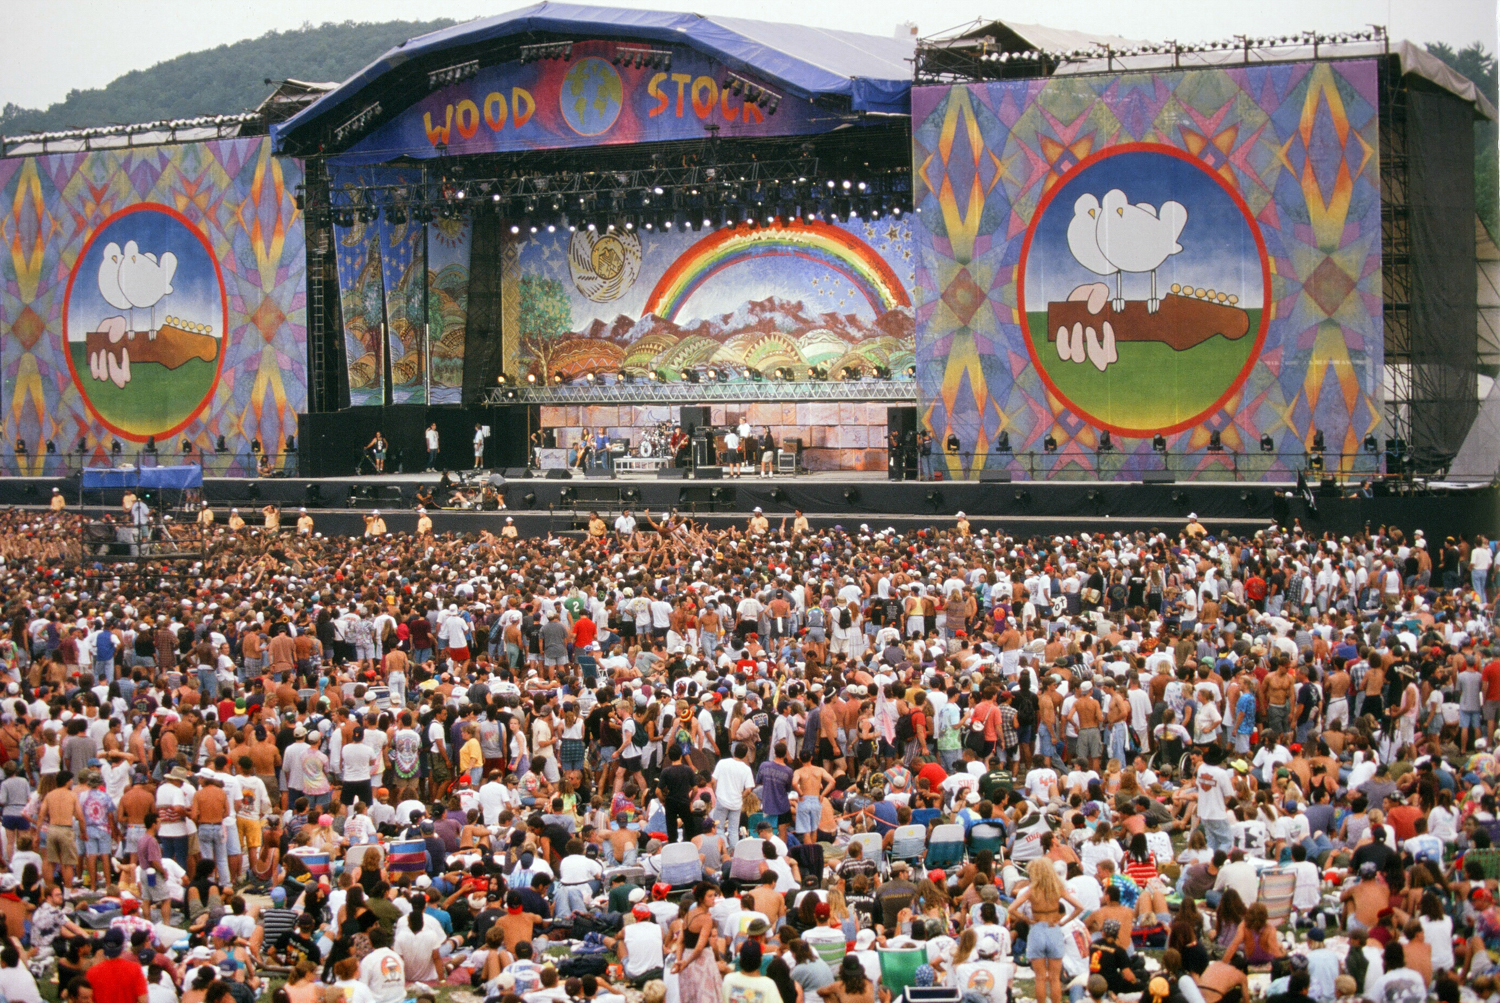 001_Woodstock-0597.jpg